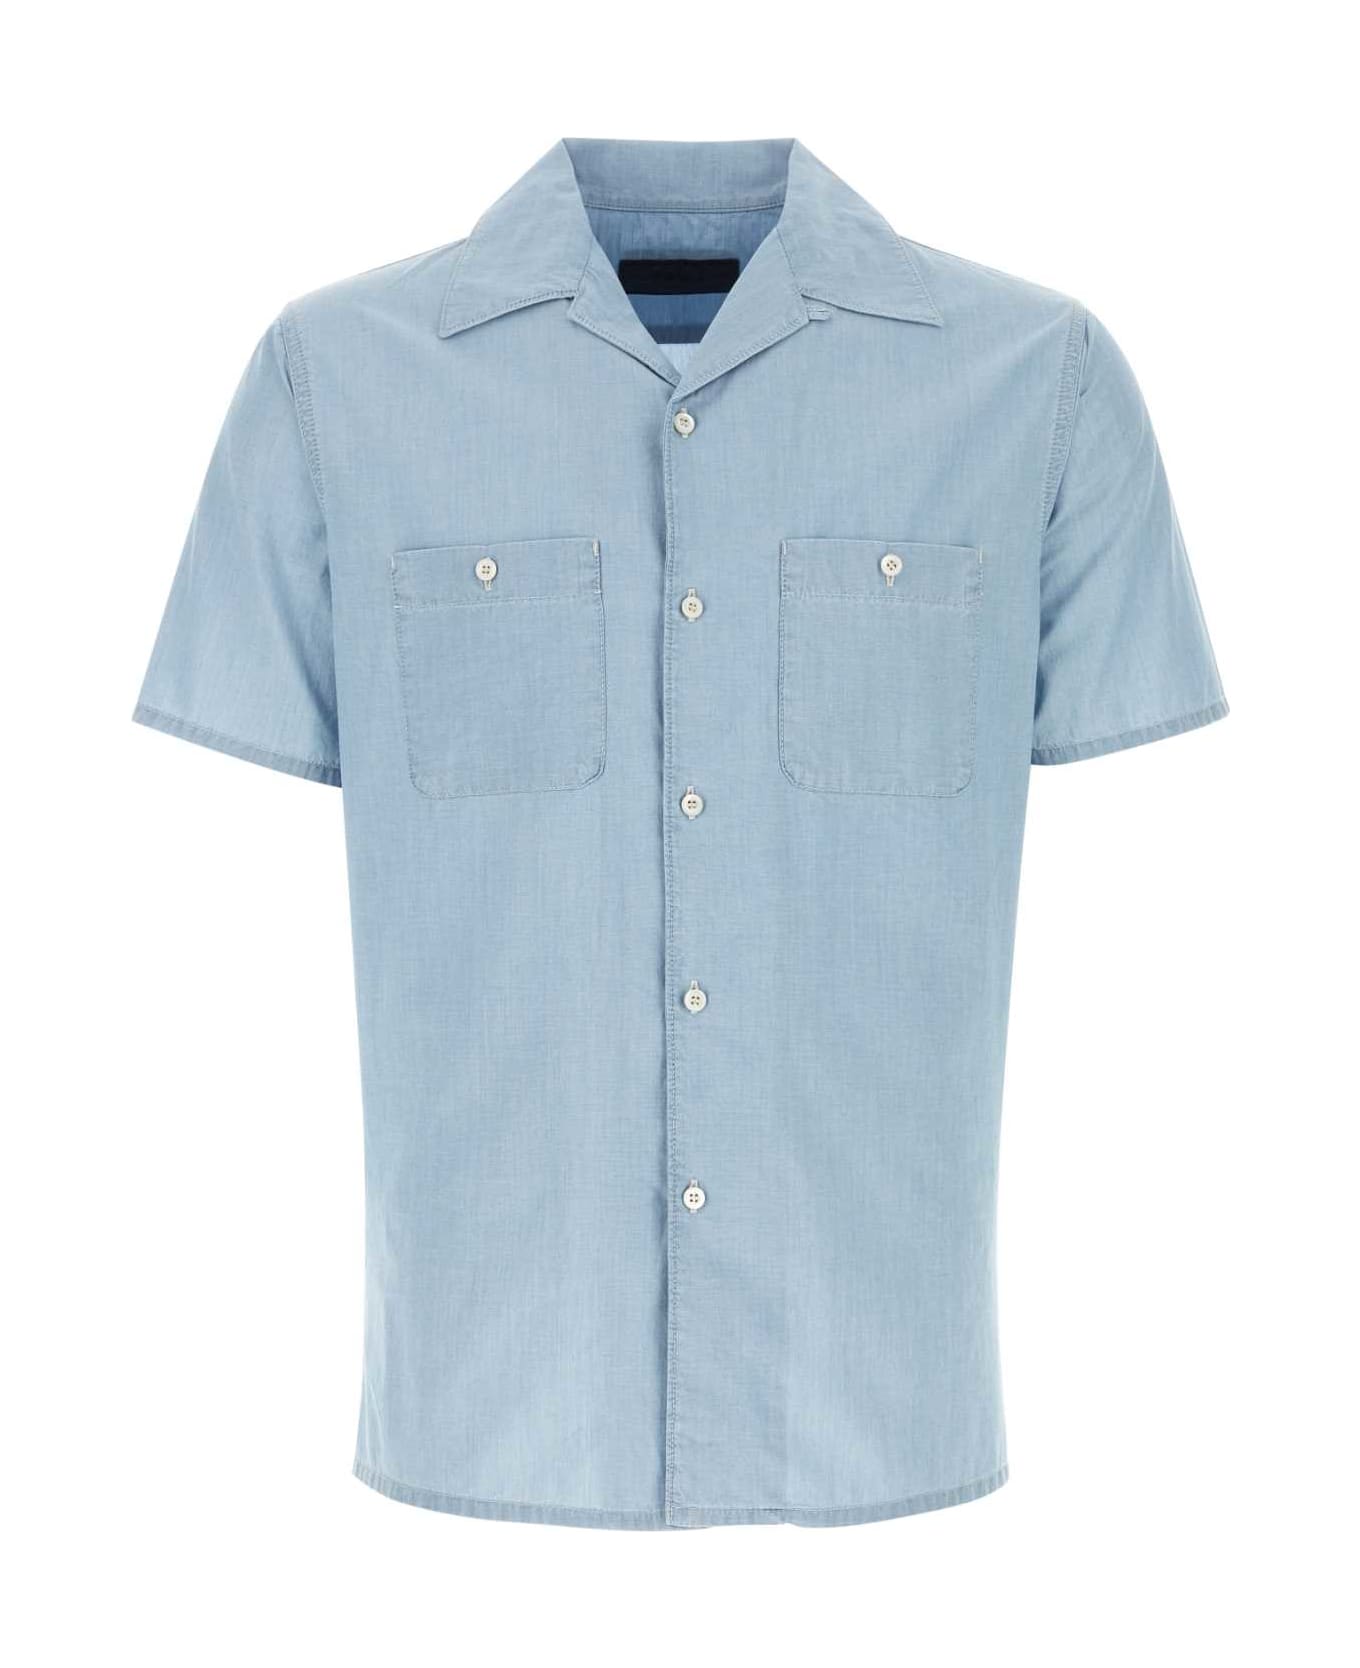 Prada Light-blue Cotton Shirt - SKY